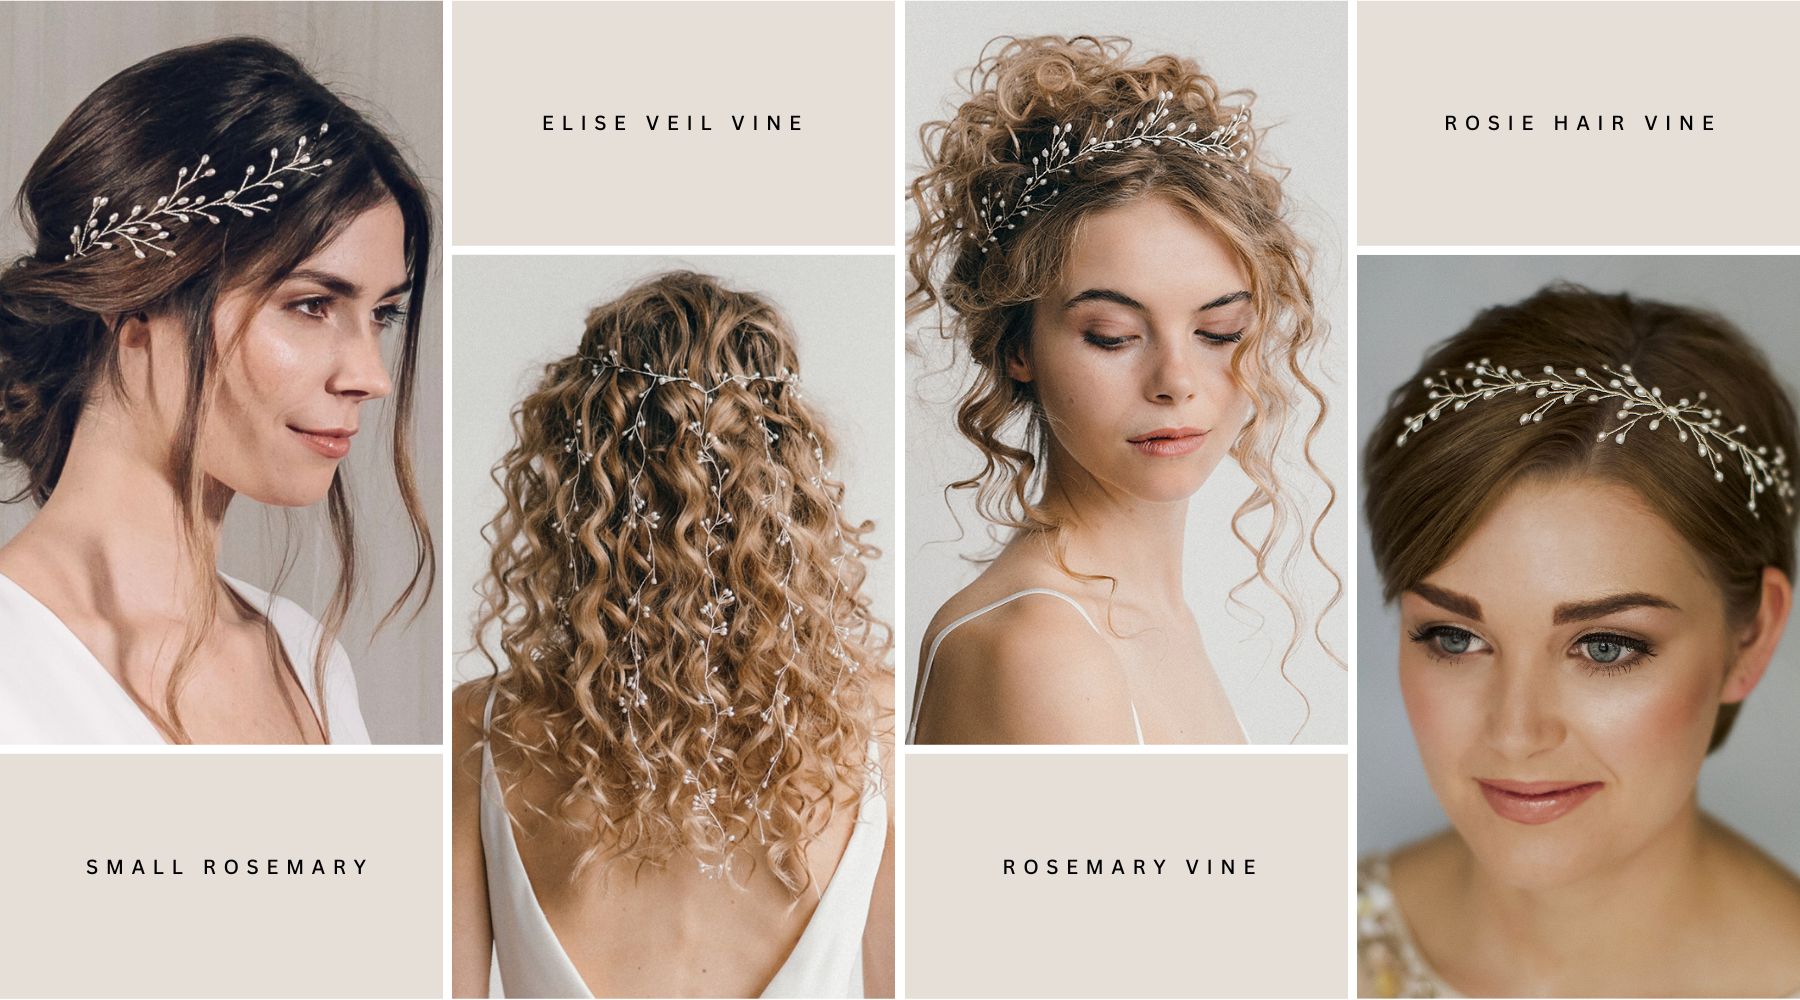 models wear pearl wedding hair accessories - hair vines